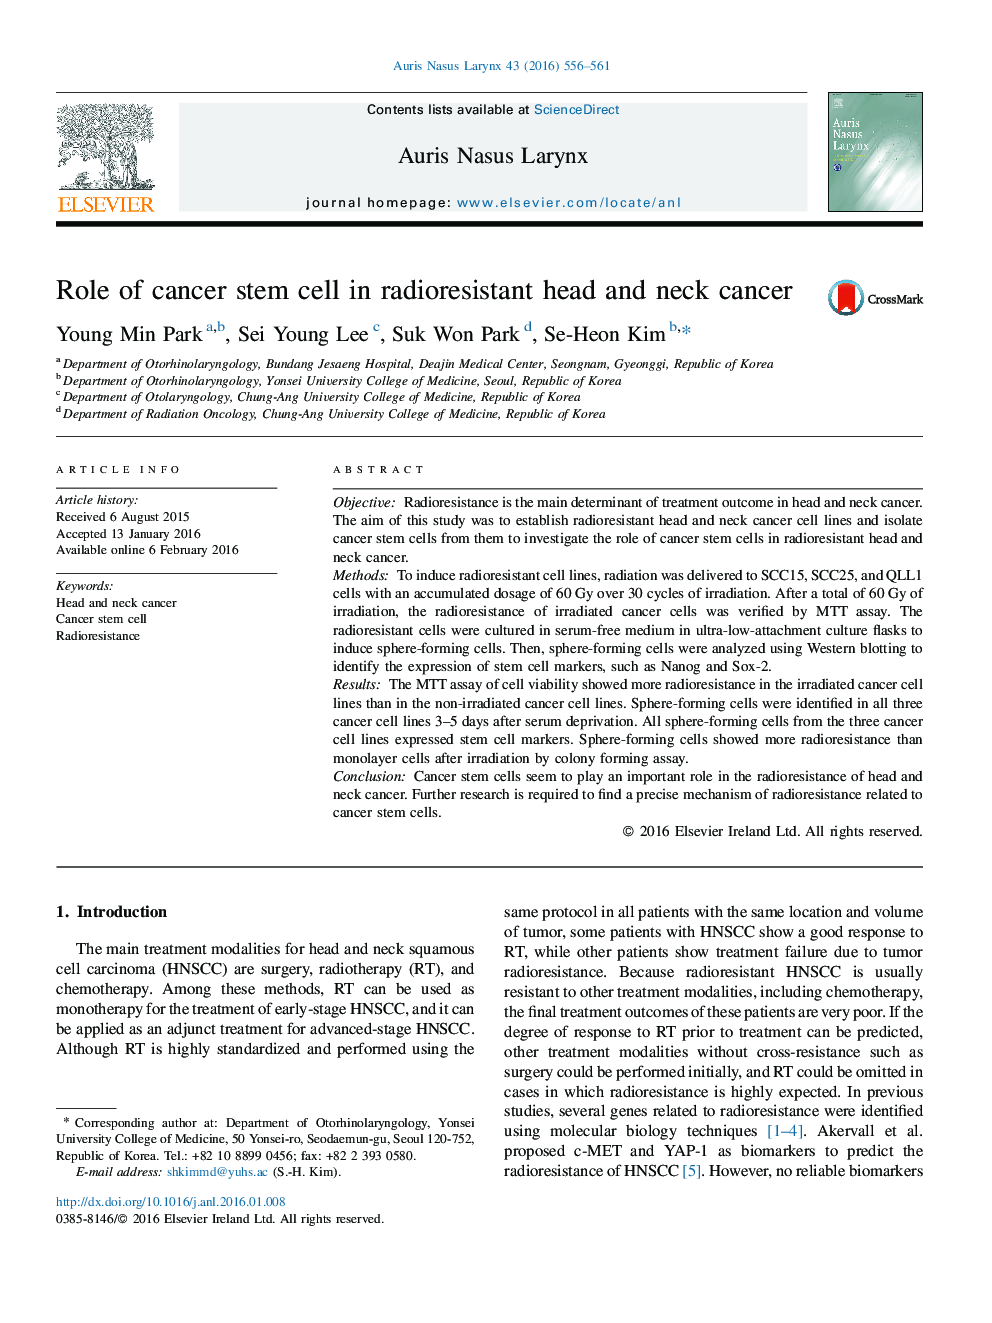 نقش سلول های بنیادی سرطانی در سرطان ریه سر و گردن 